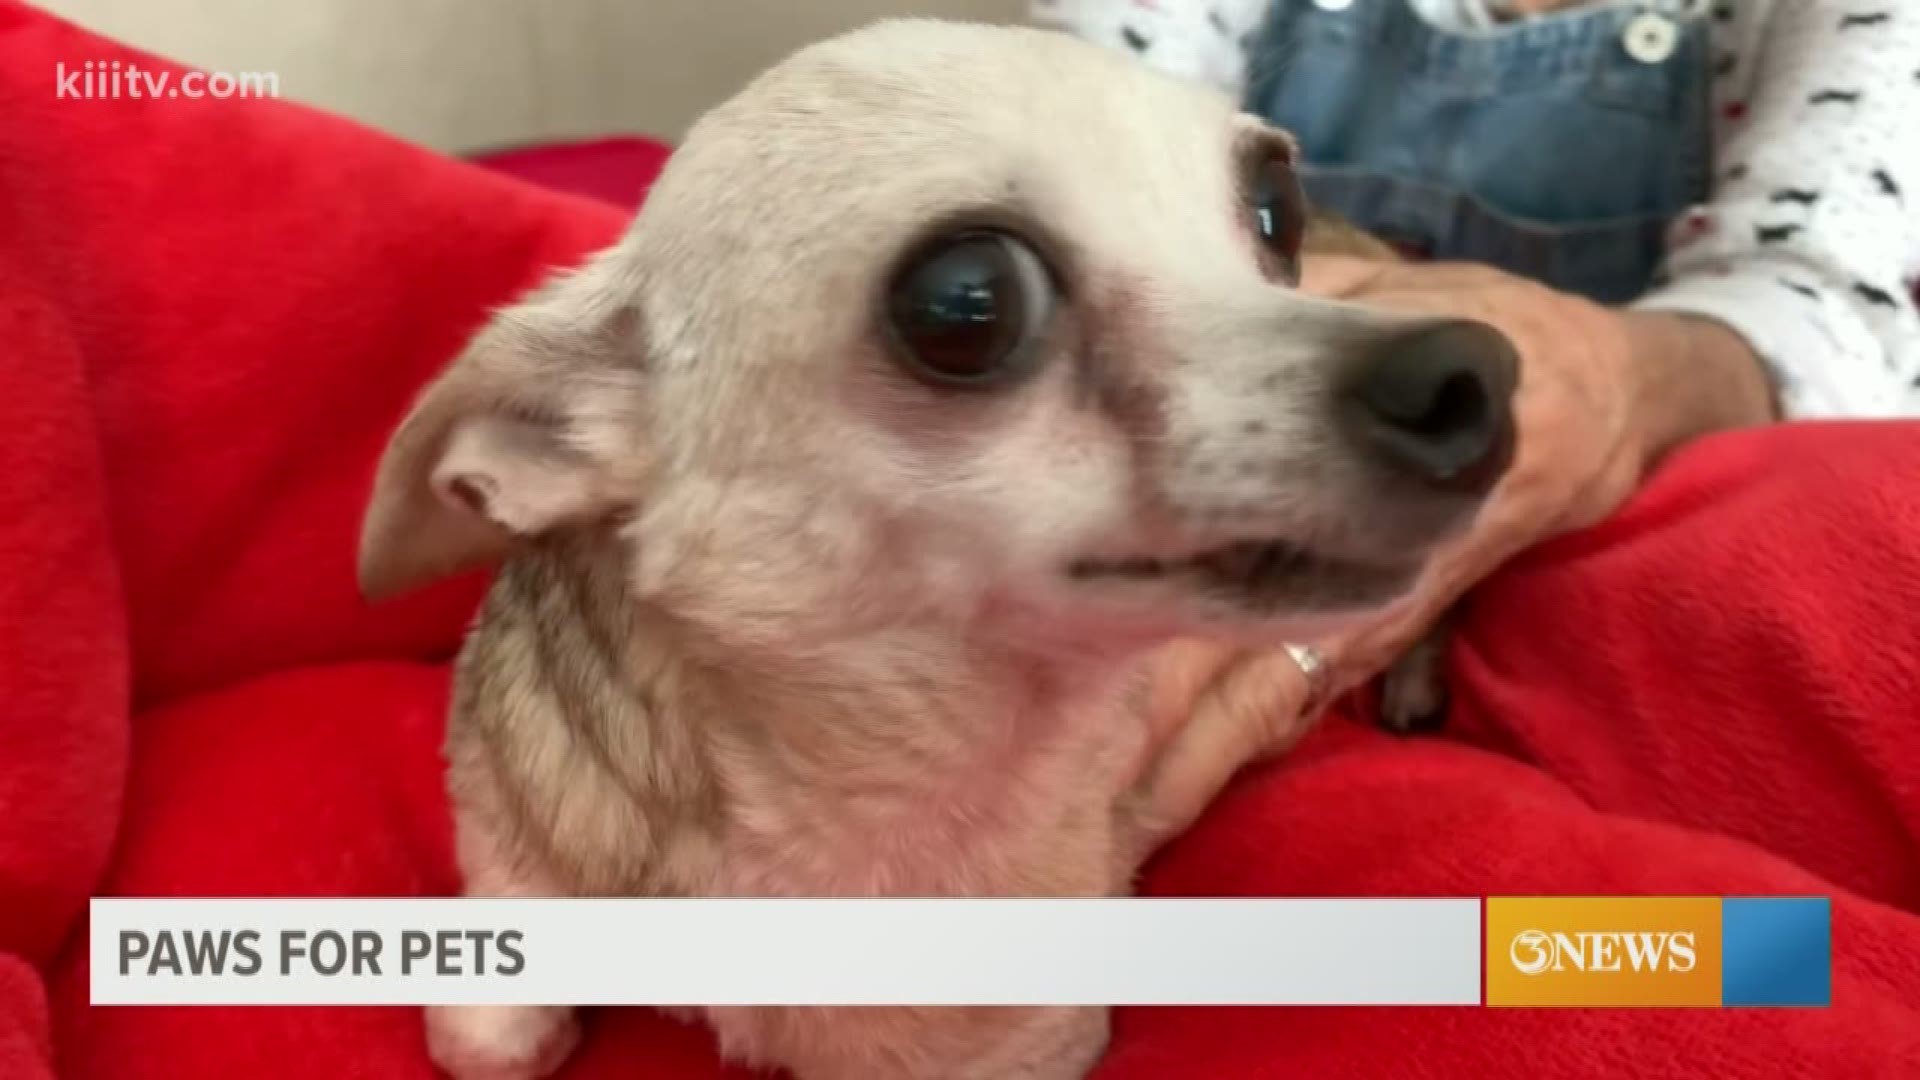 Meet the next adoptable pet from Peewee's Pet Adoption.